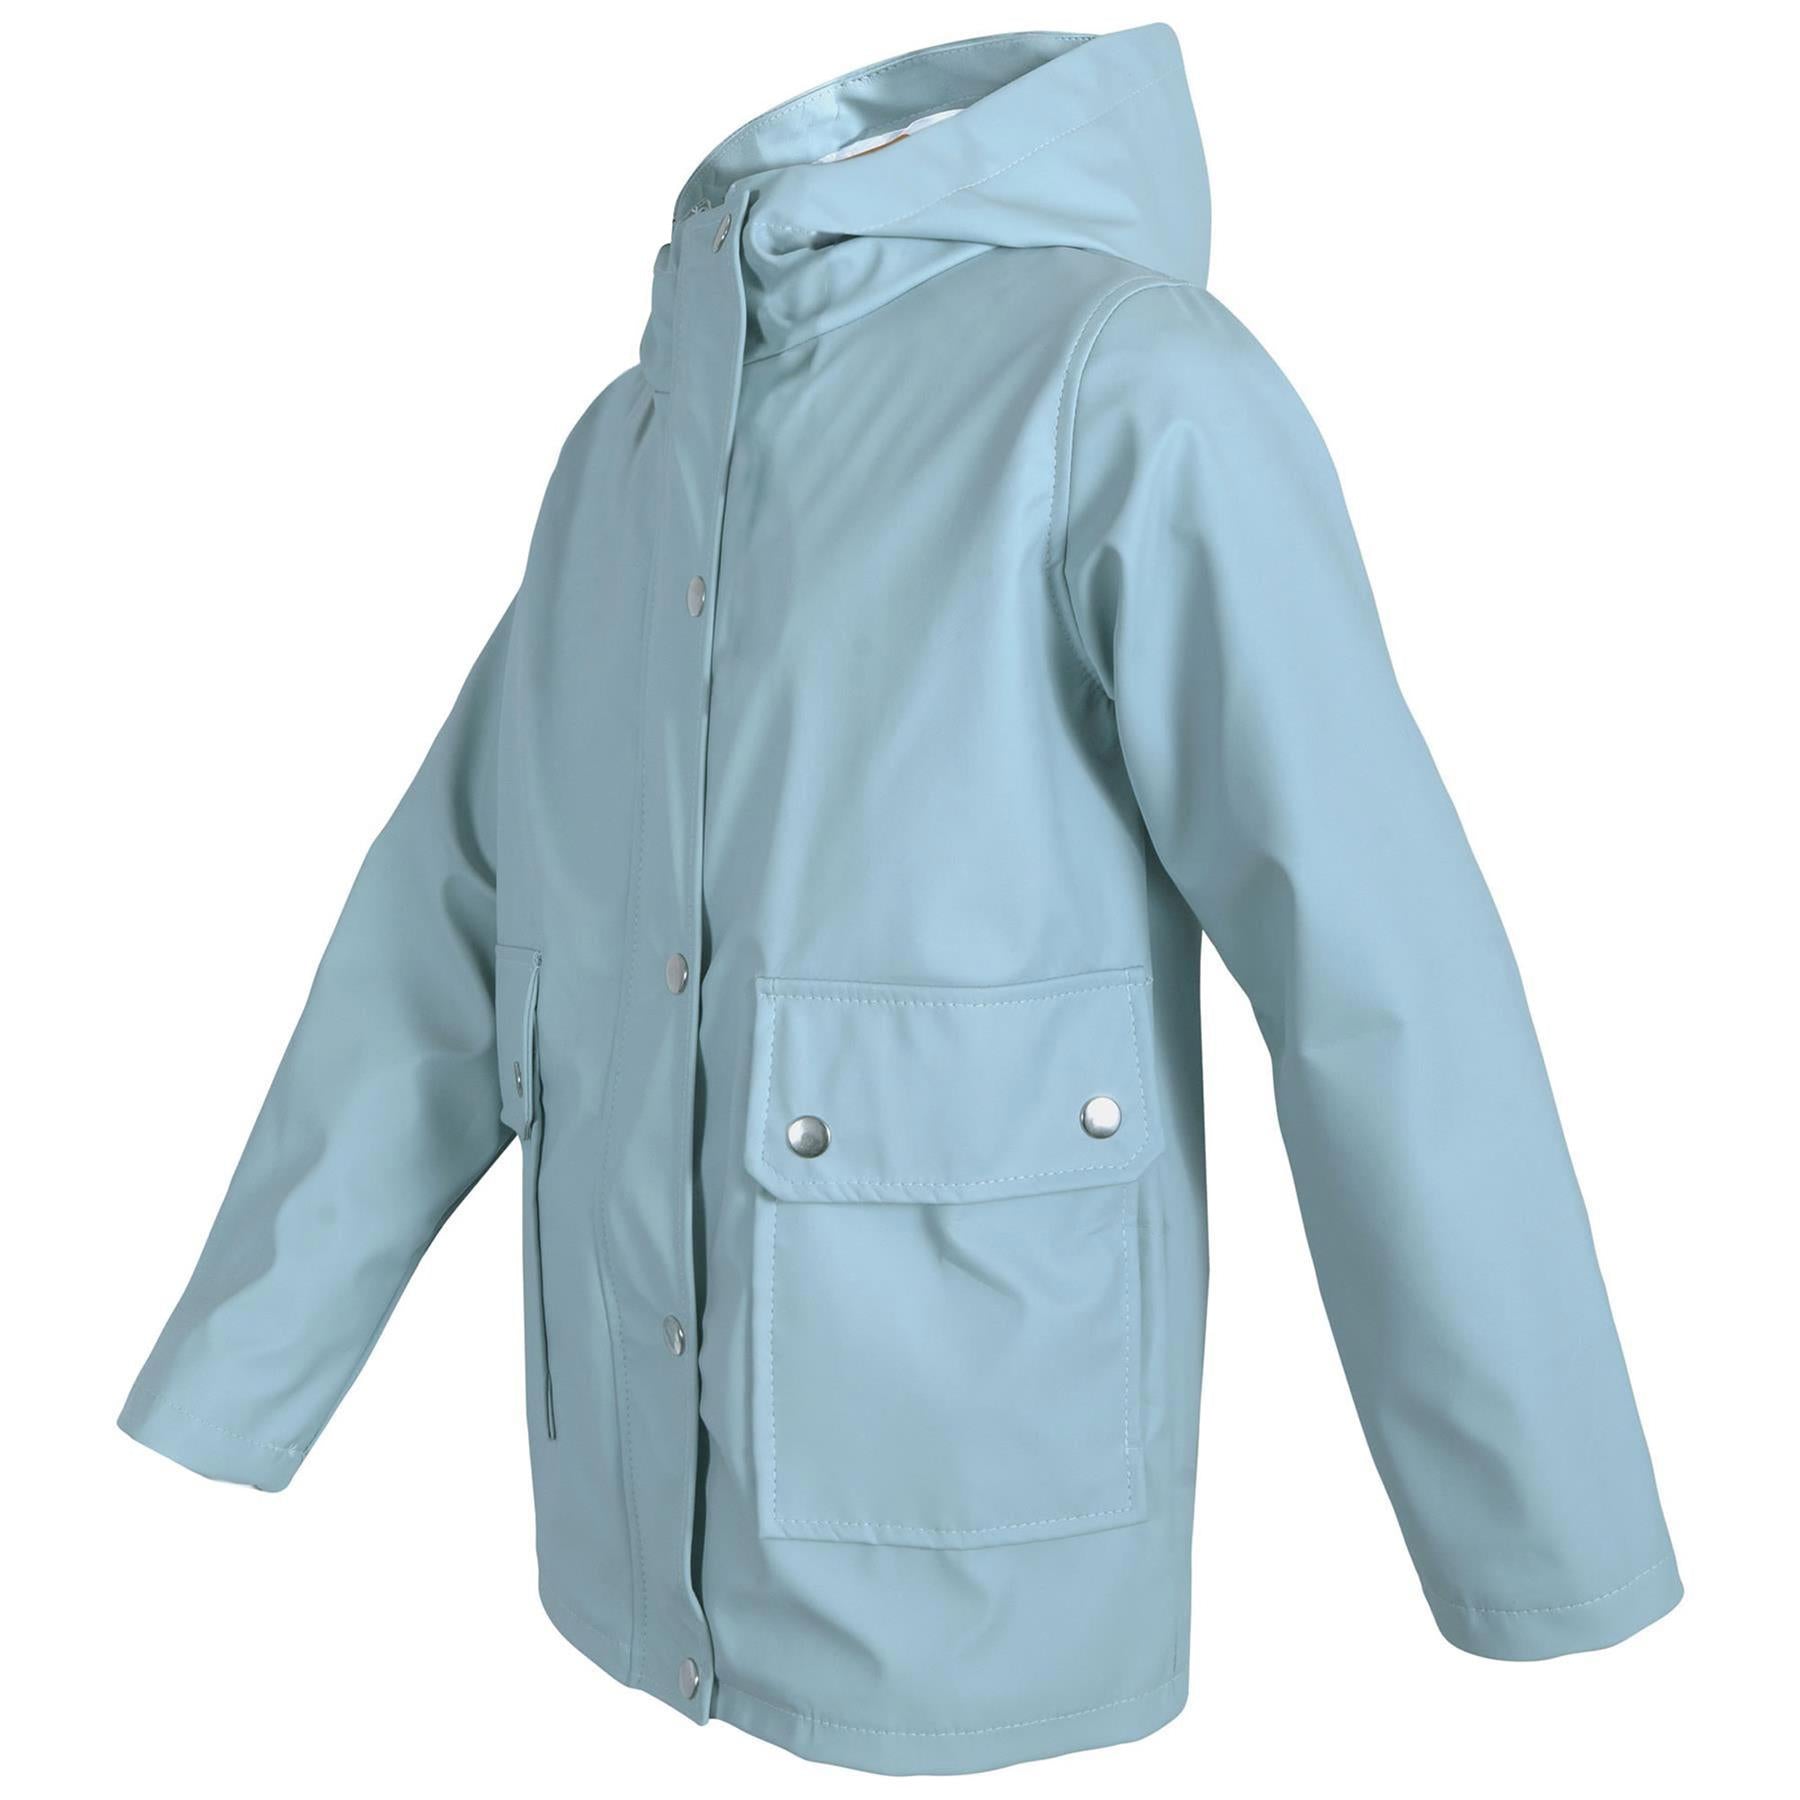 PU Raincoat Jacket Windbreaker Dusty Blue Waterproof Parka Hooded Girls Boys